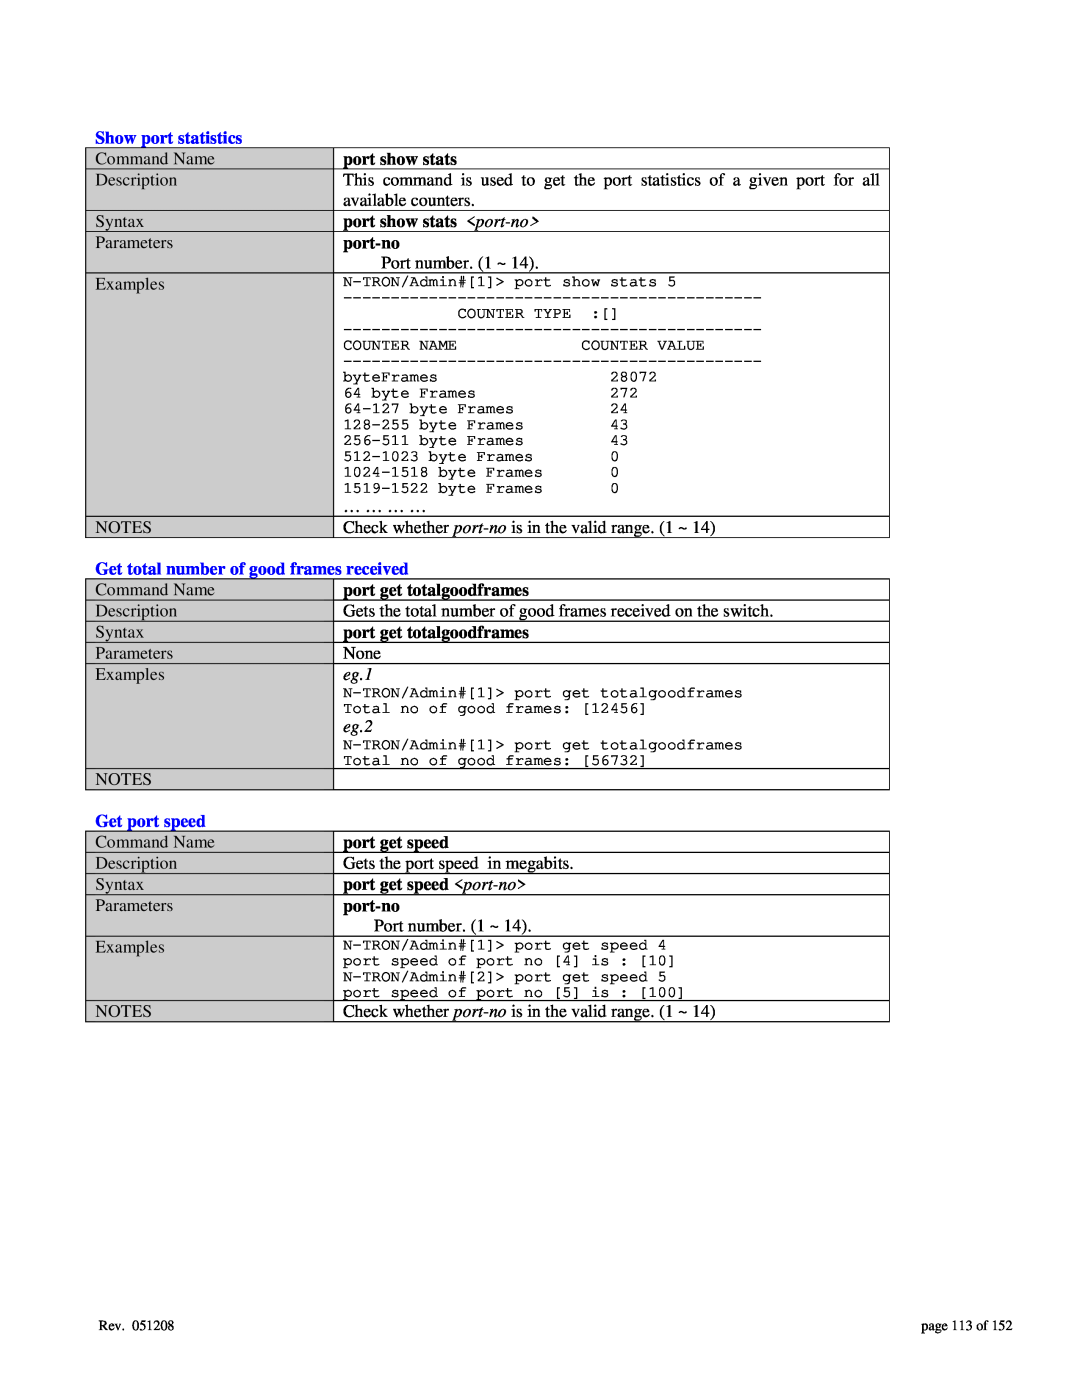 Gigabyte 7014 user manual Show port statistics, Get total number of good frames received, eg.1, eg.2, Get port speed 